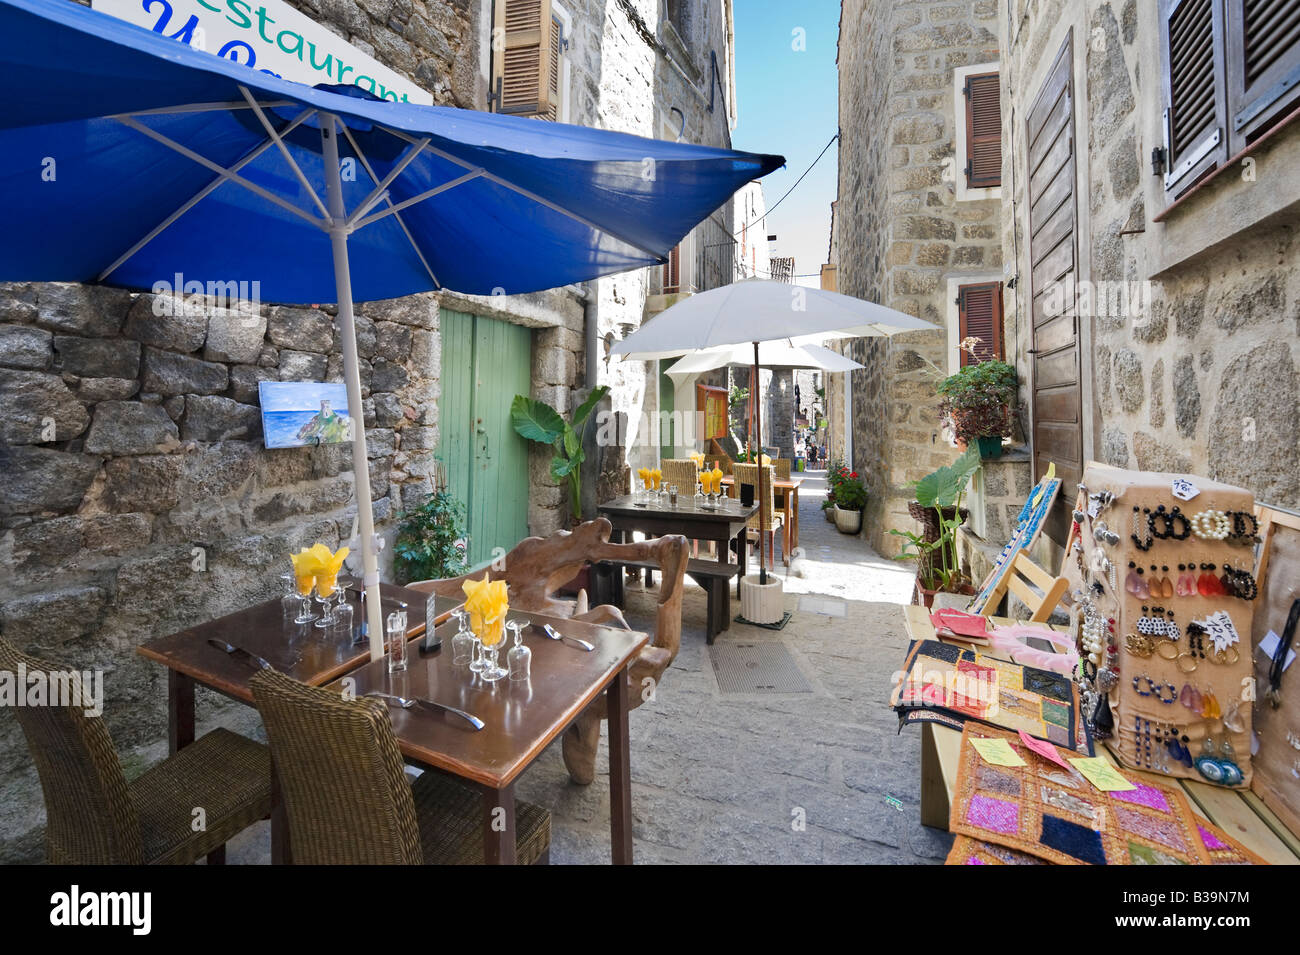 Restaurant et des bijoux en décrochage la vieille ville (Old Town), Sartène, Alta Rocca, Corse, France Banque D'Images